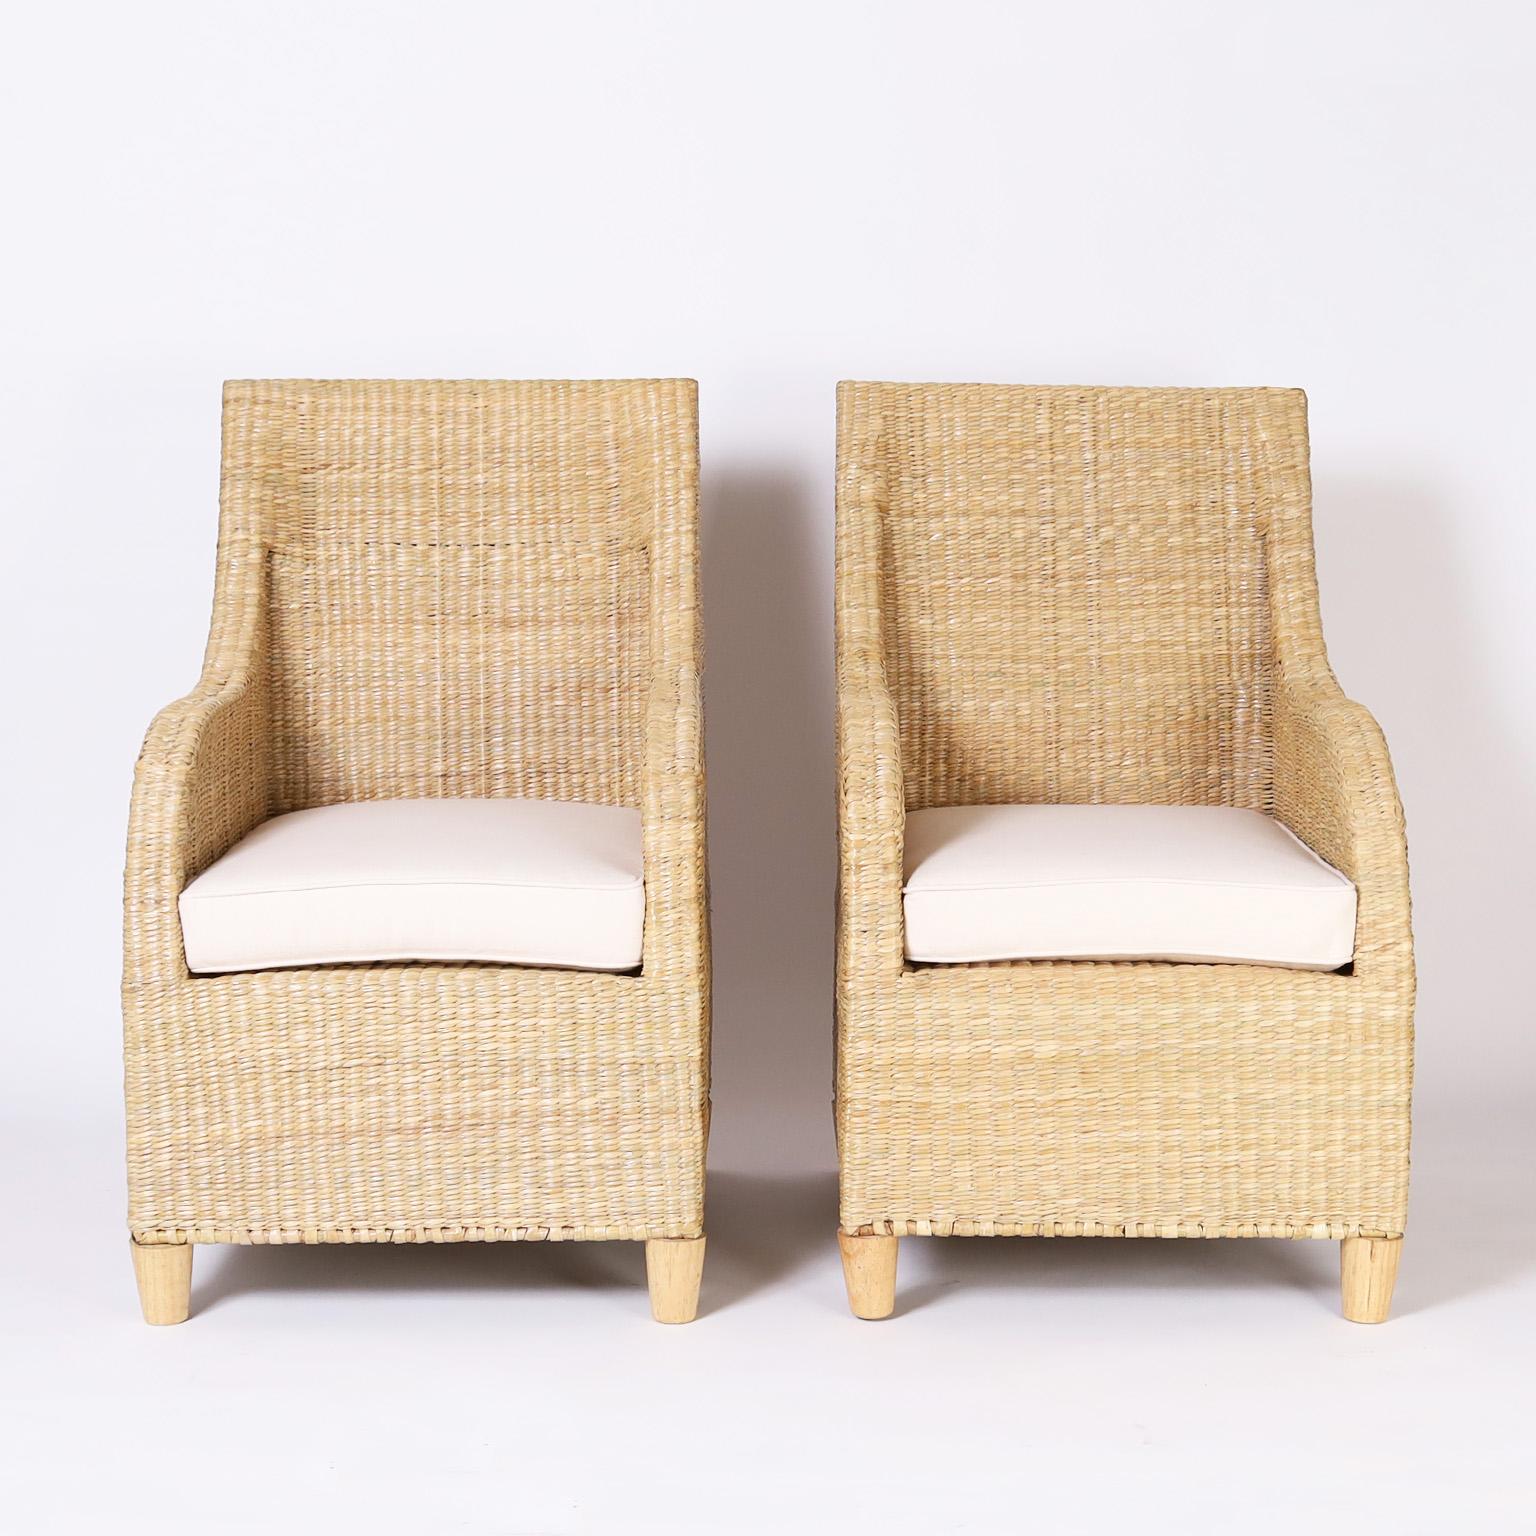 Ein Paar von der Mitte des Jahrhunderts inspirierte Sessel aus Weidengeflecht oder Schilfrohr, die auf einem robusten Metallrahmen geflochten sind. Eines von vielen neuen Designs aus der FS Flores Collection, die exklusiv von F.S. angeboten wird.